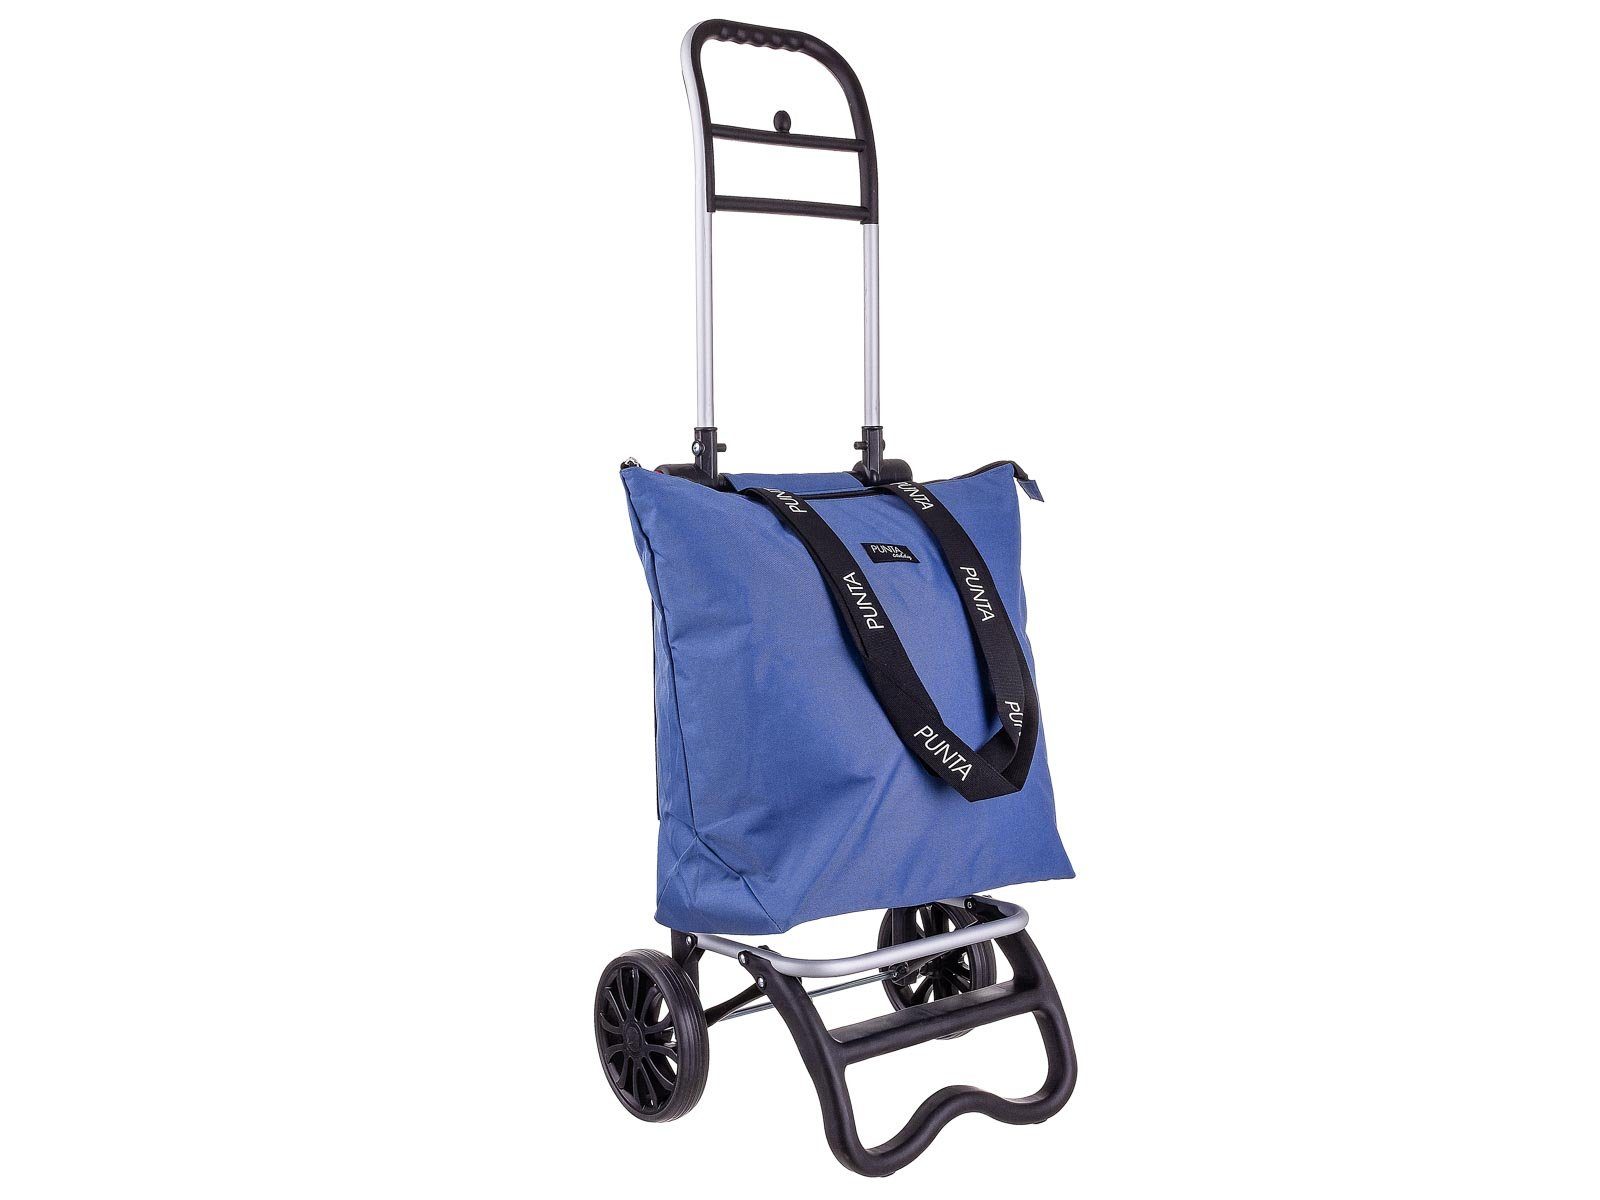 10430 36 l, Kühlfach, Kühlfach Punta graublau mit Alu-Shopper fabrizio® Einkaufstrolley caddy